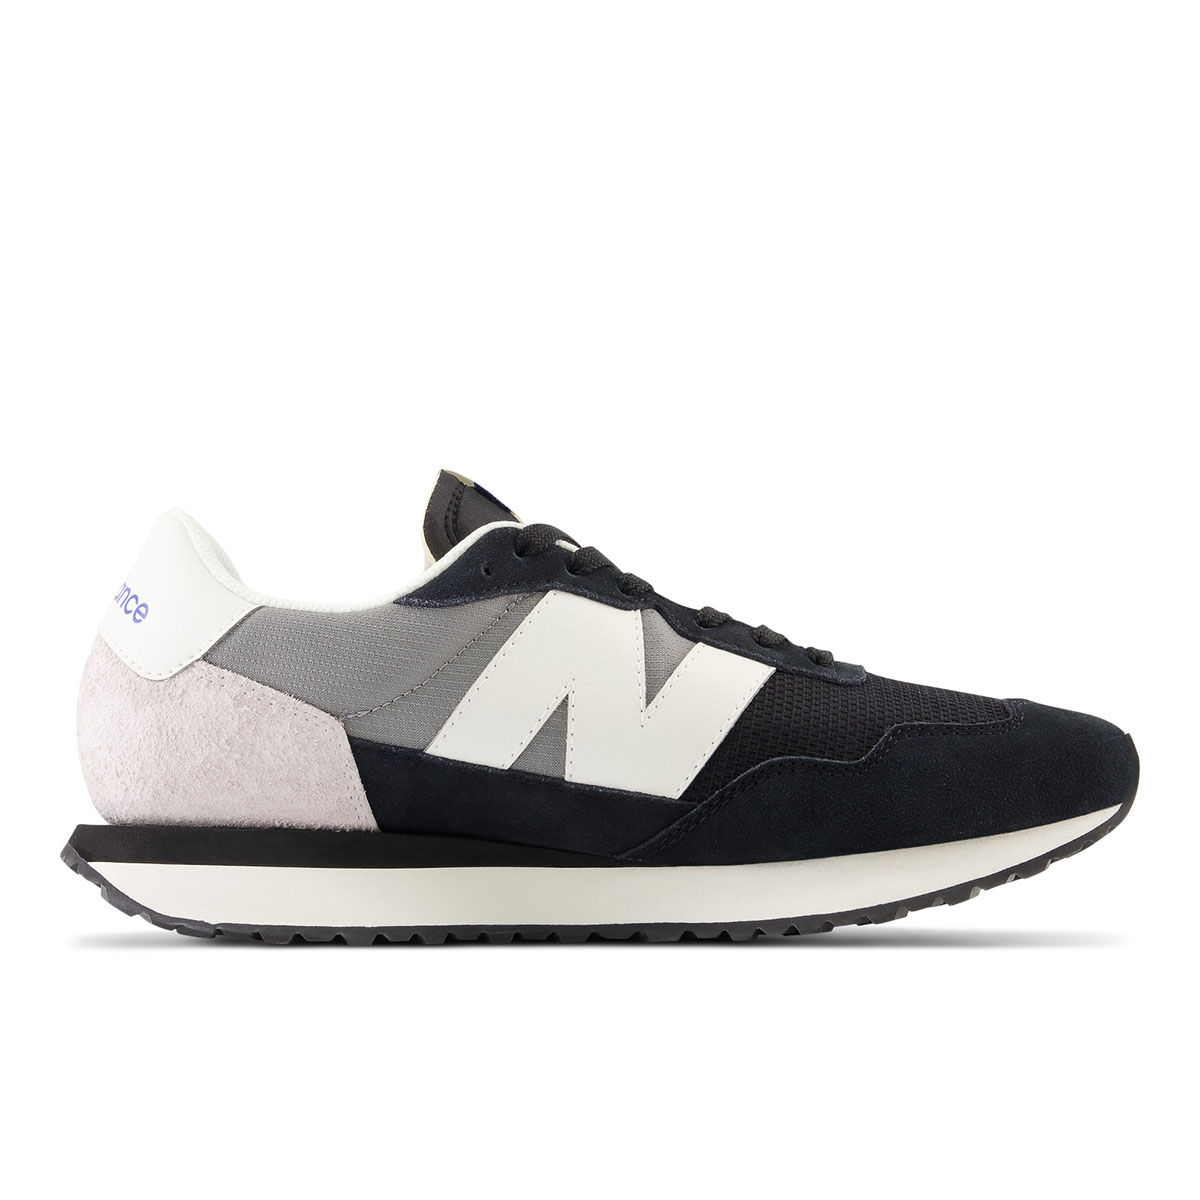 New Balance 520 v7 Lightweight Running Shoes-Men | Shoe City